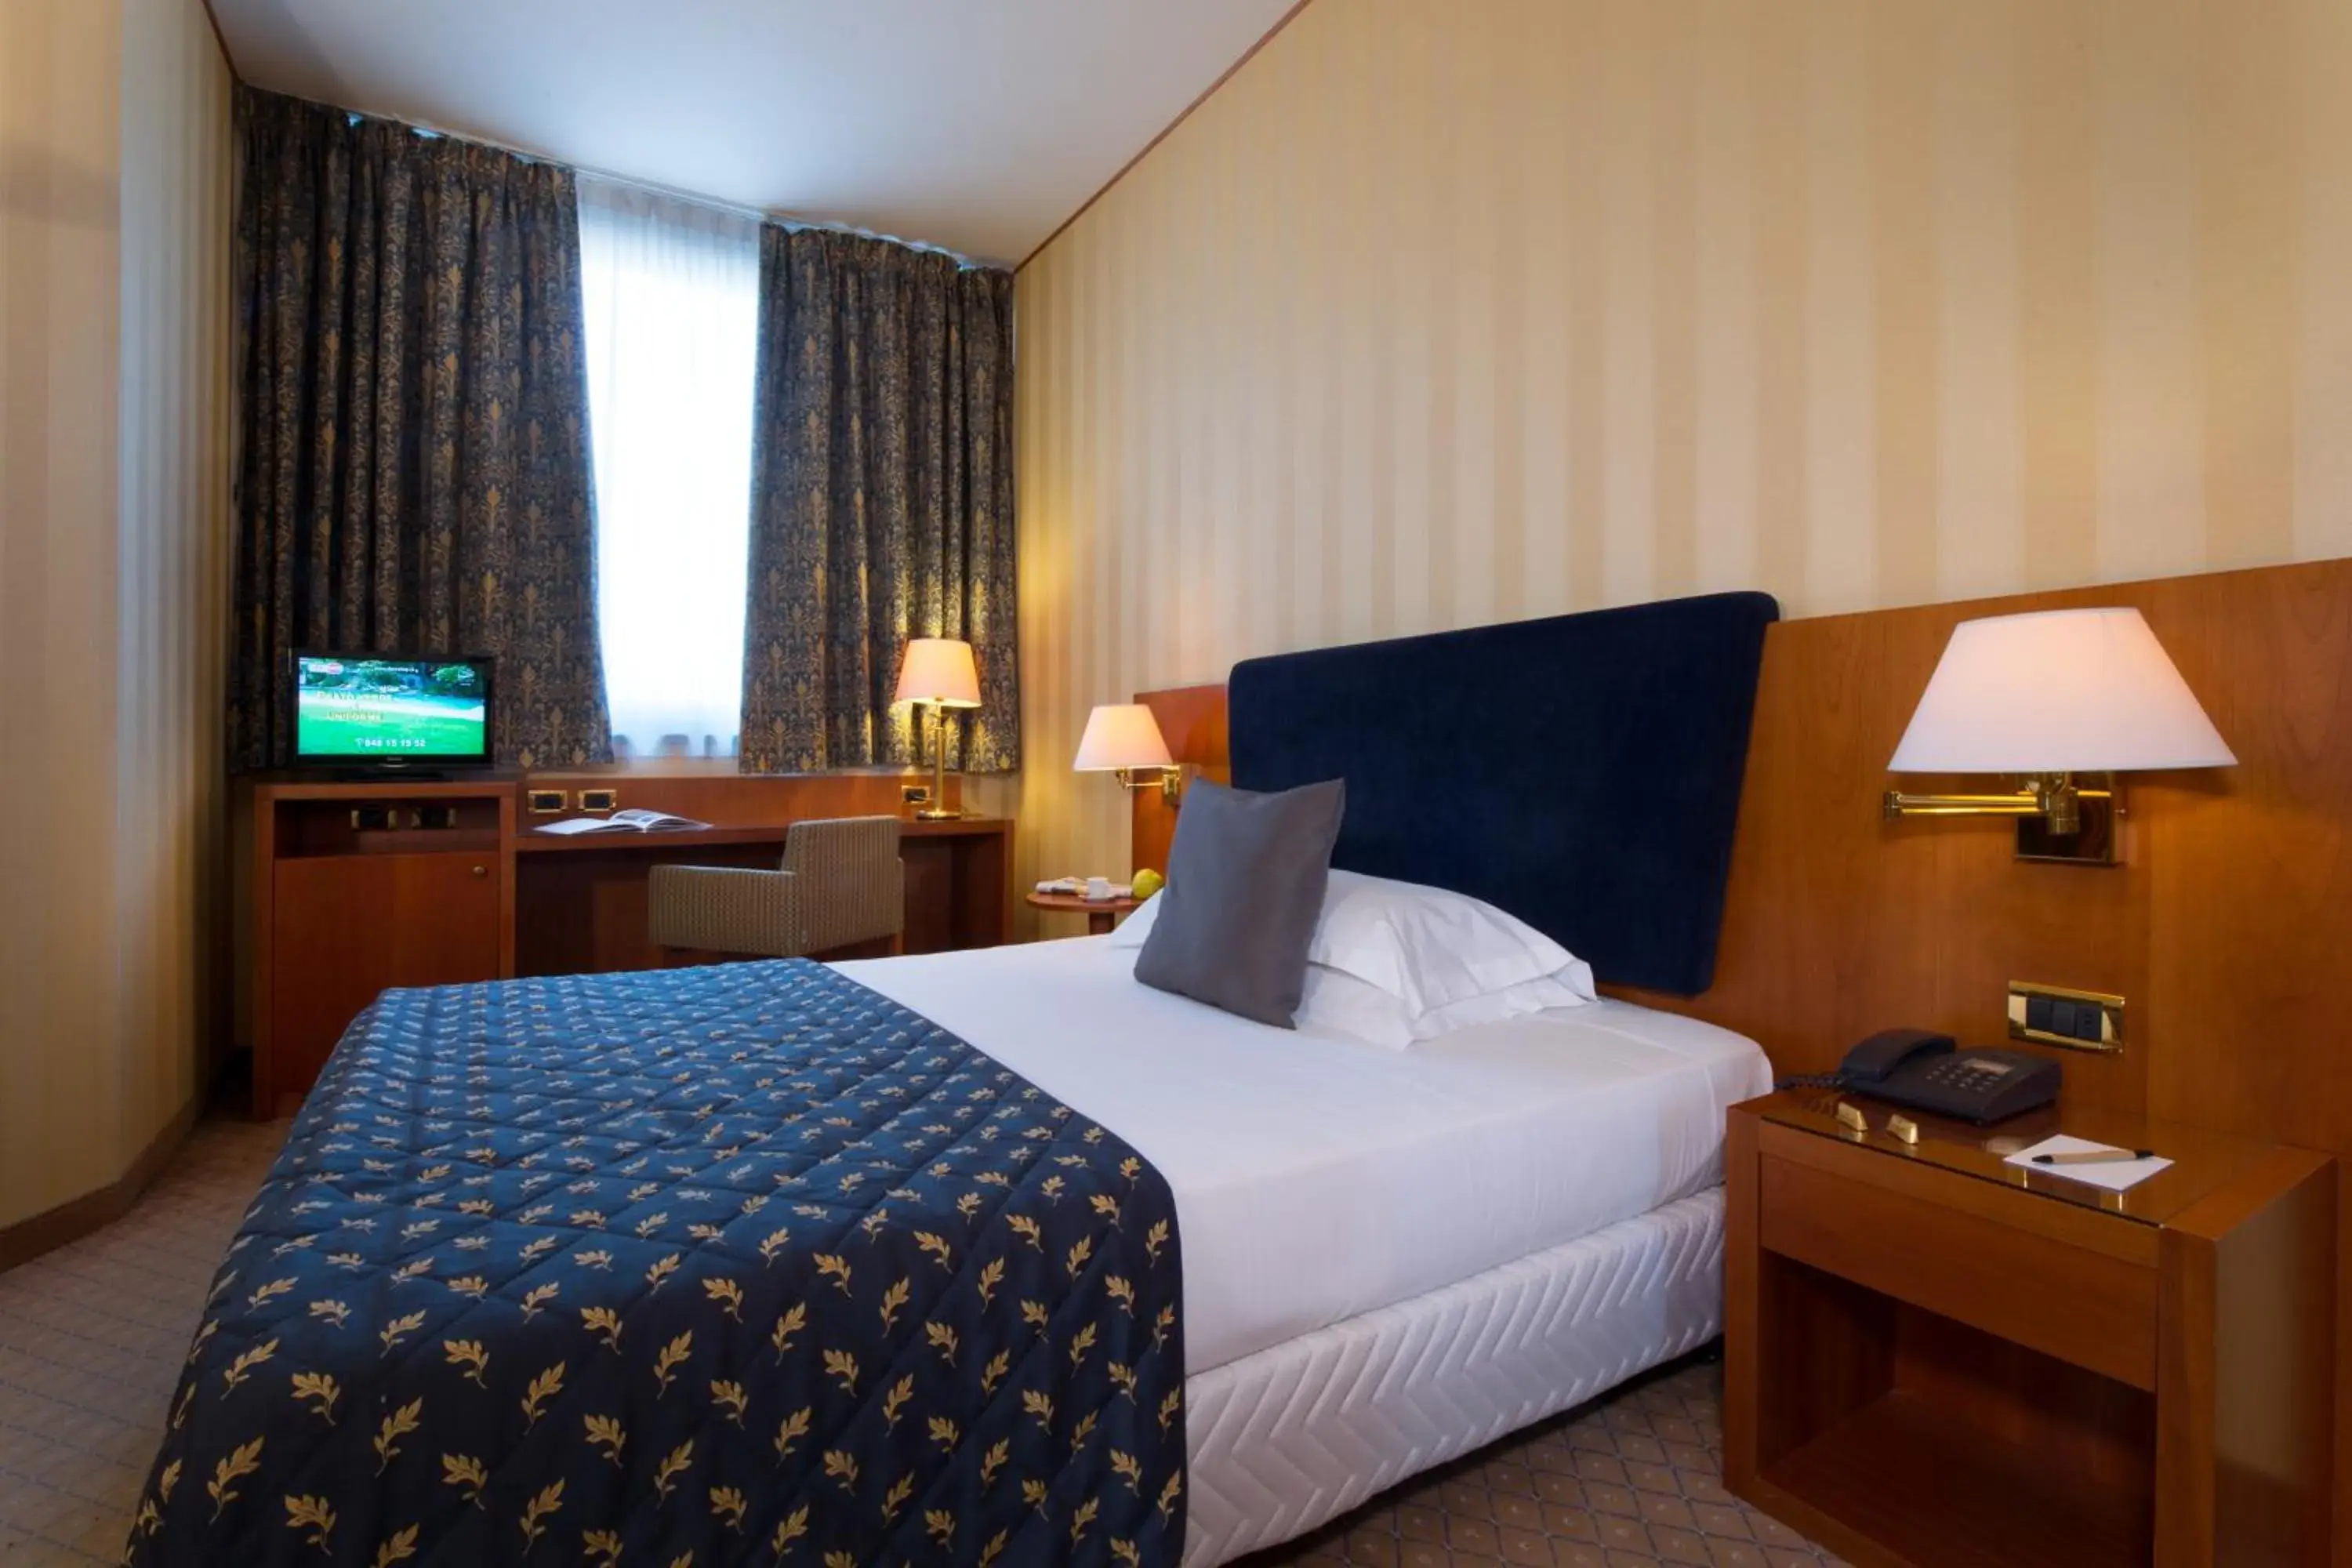 Bedroom, Room Photo in Cdh Hotel Parma & Congressi